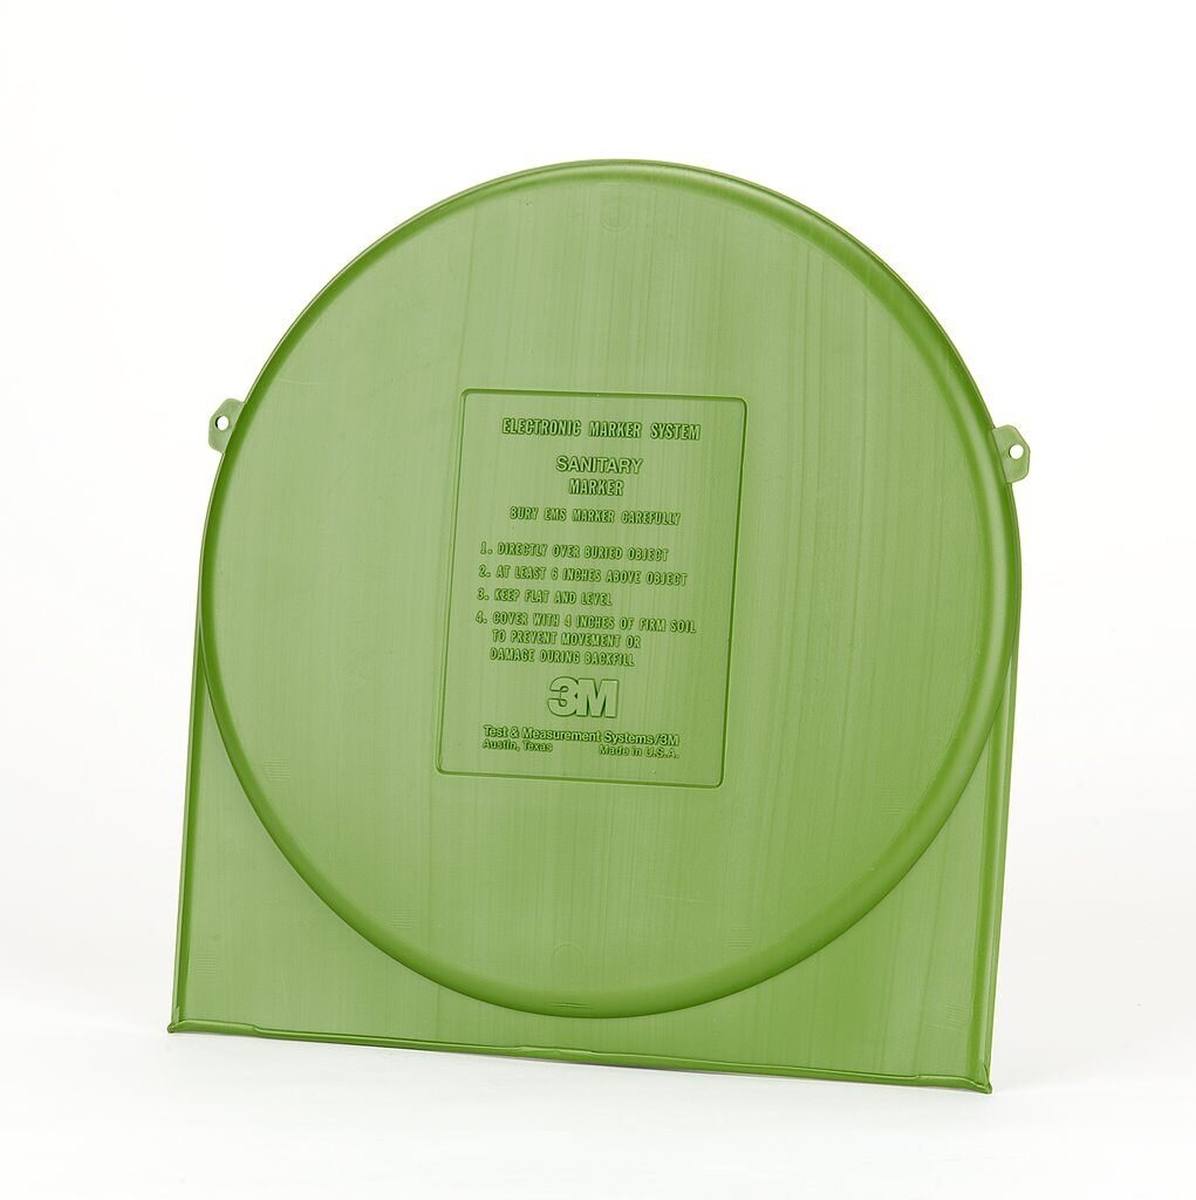 3M 1253 EMS Marker met volledig bereik - Afvalwater, groen